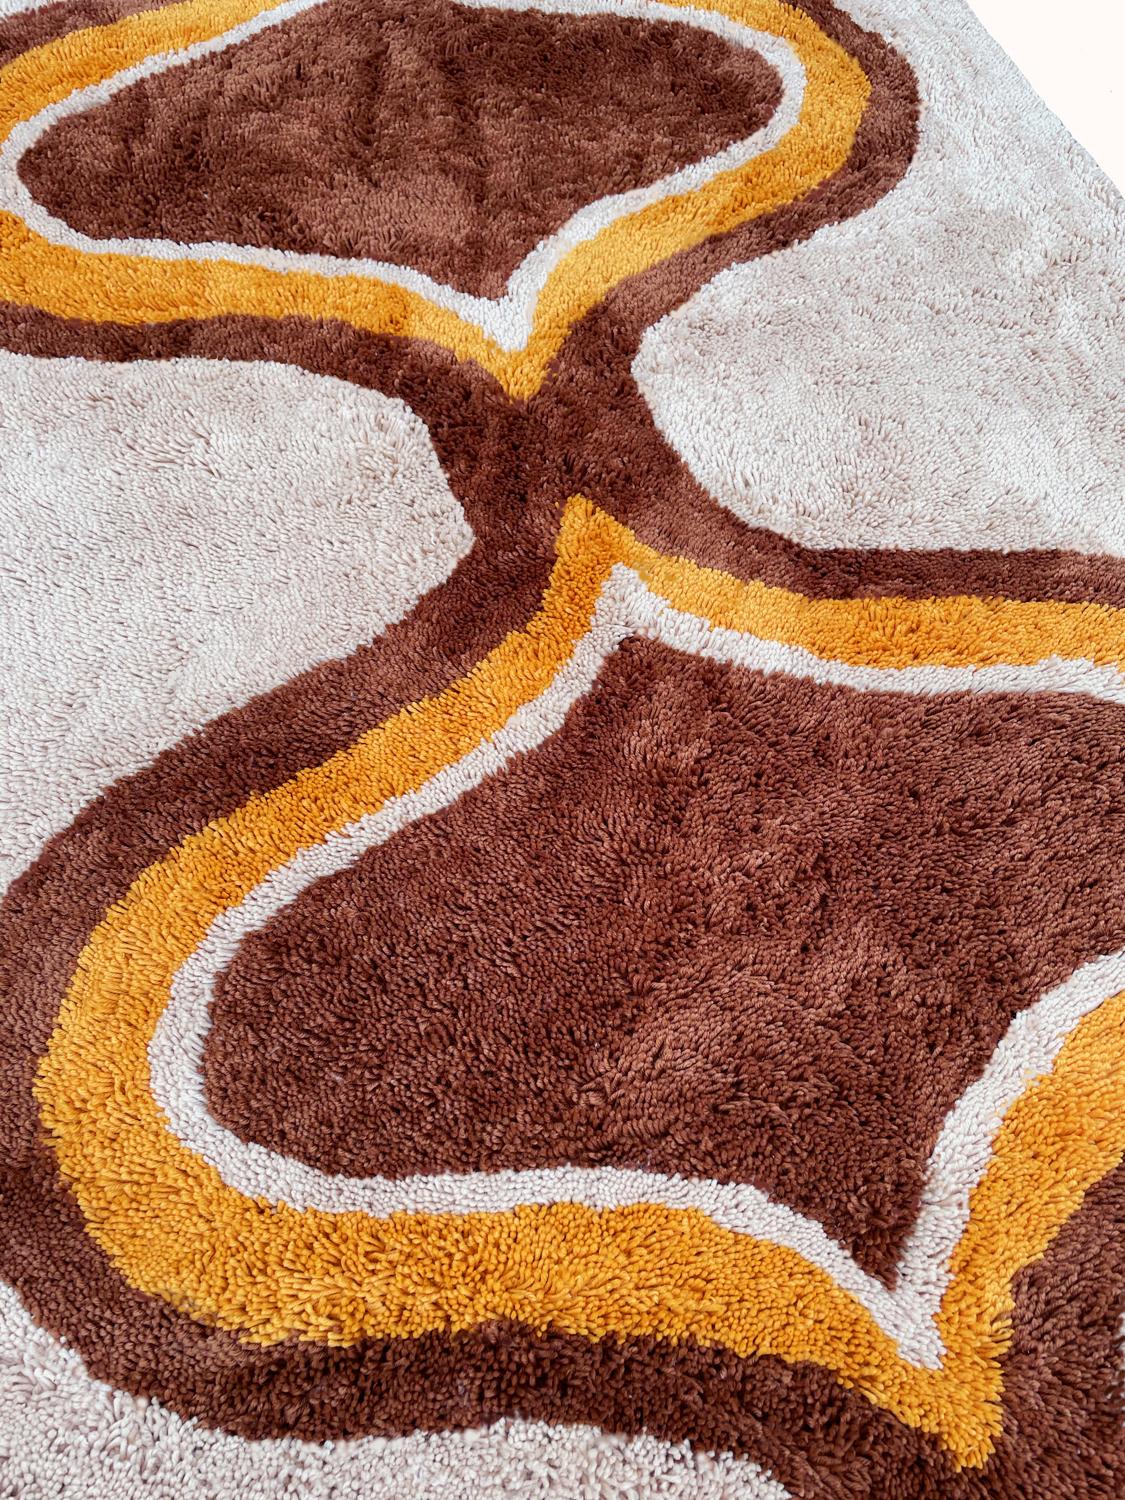 danish modern rugs